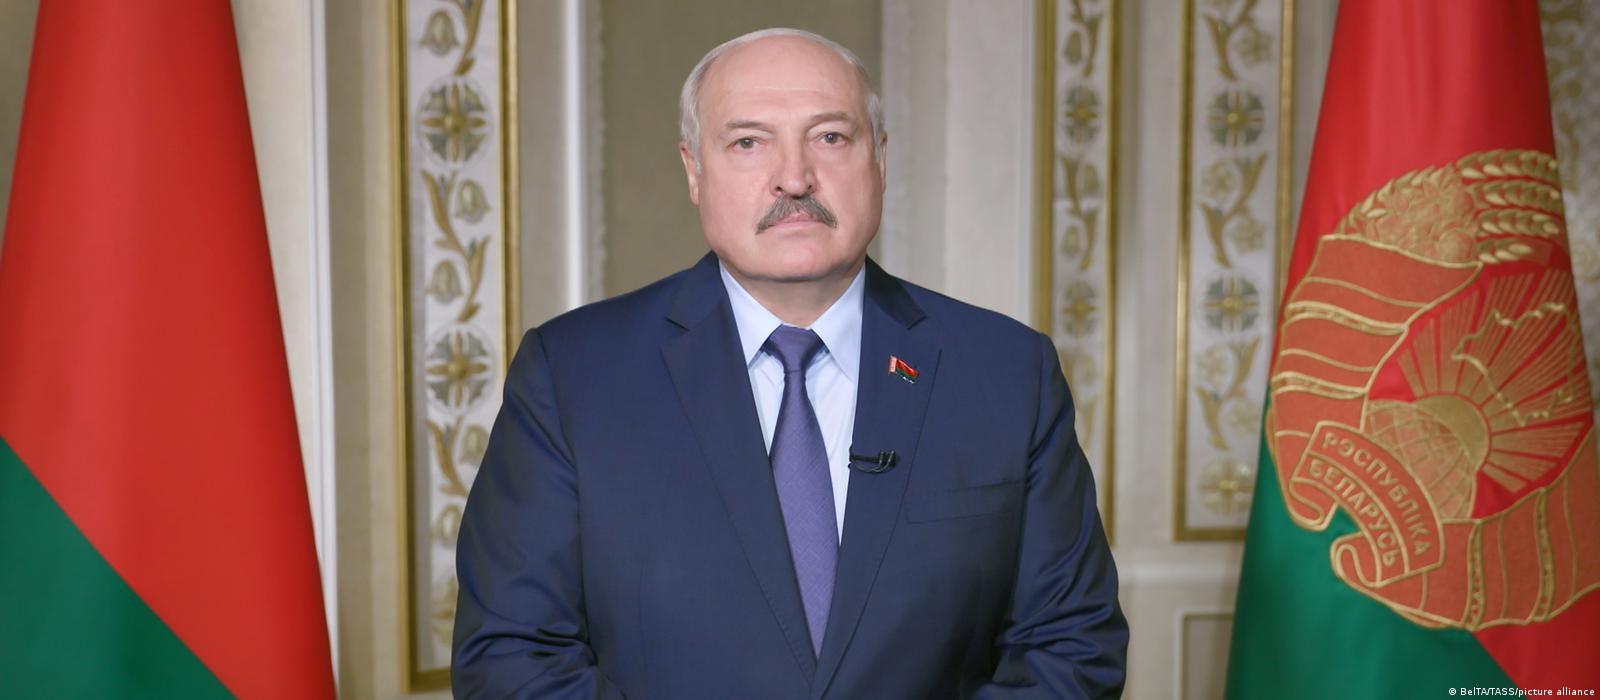 Tổng thống Belarus Alexander Lukashenko. Ảnh: DW